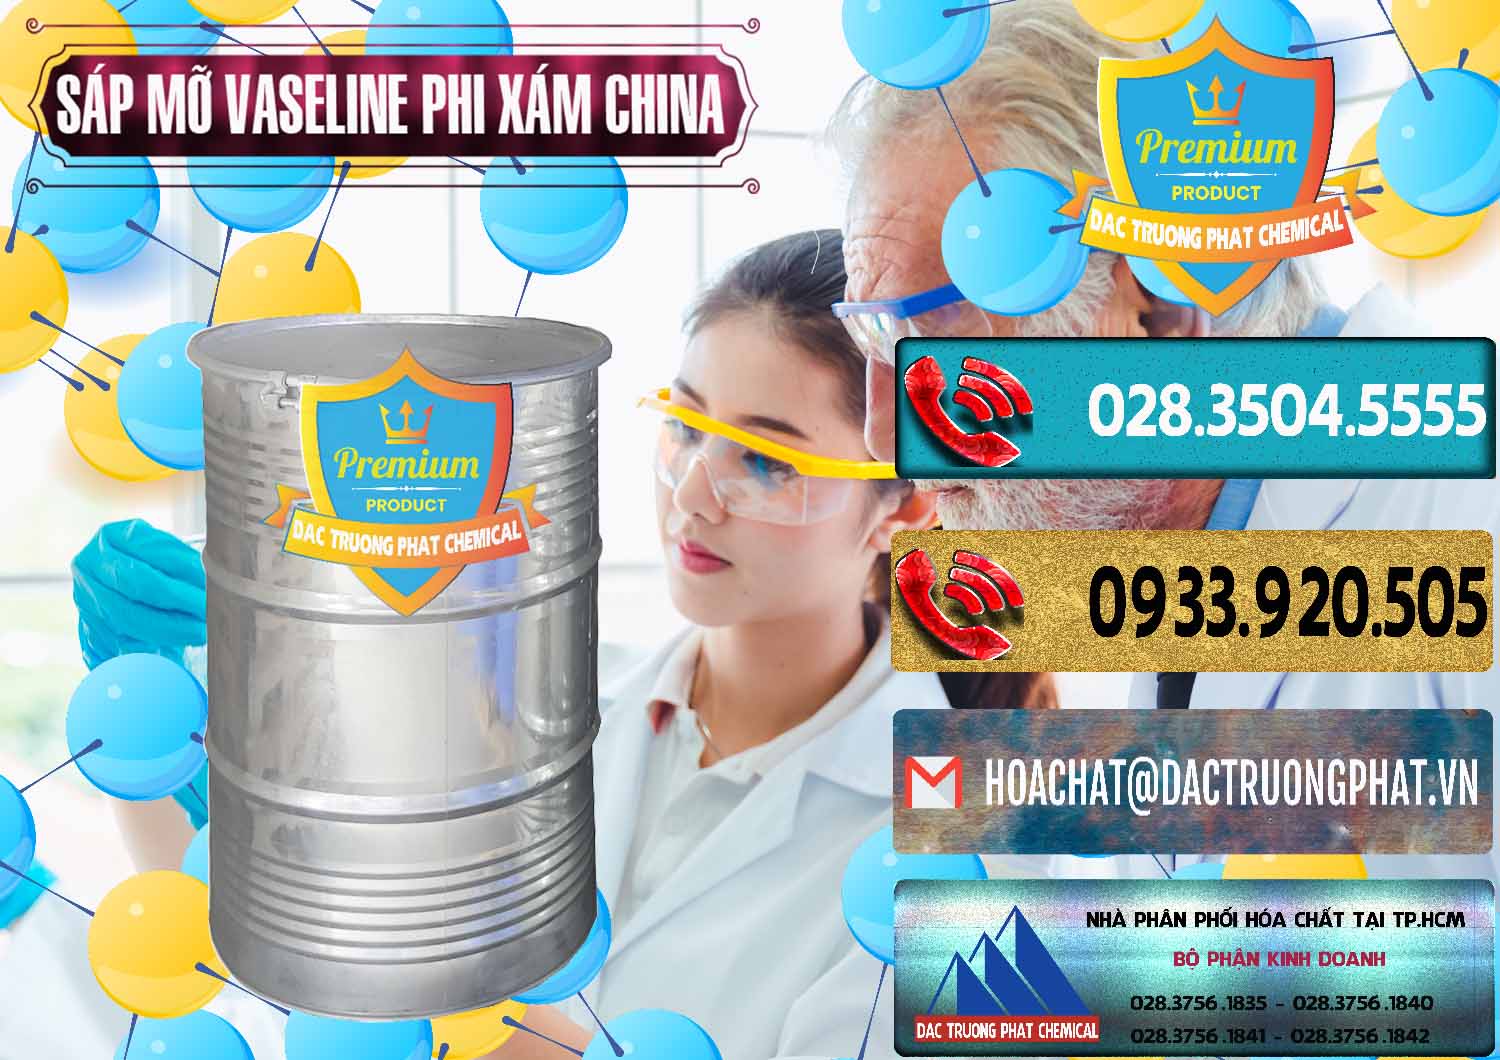 Cung ứng ( bán ) Sáp Mỡ Vaseline Phi Xám Trung Quốc China - 0291 - Đơn vị chuyên phân phối & nhập khẩu hóa chất tại TP.HCM - hoachatdetnhuom.com